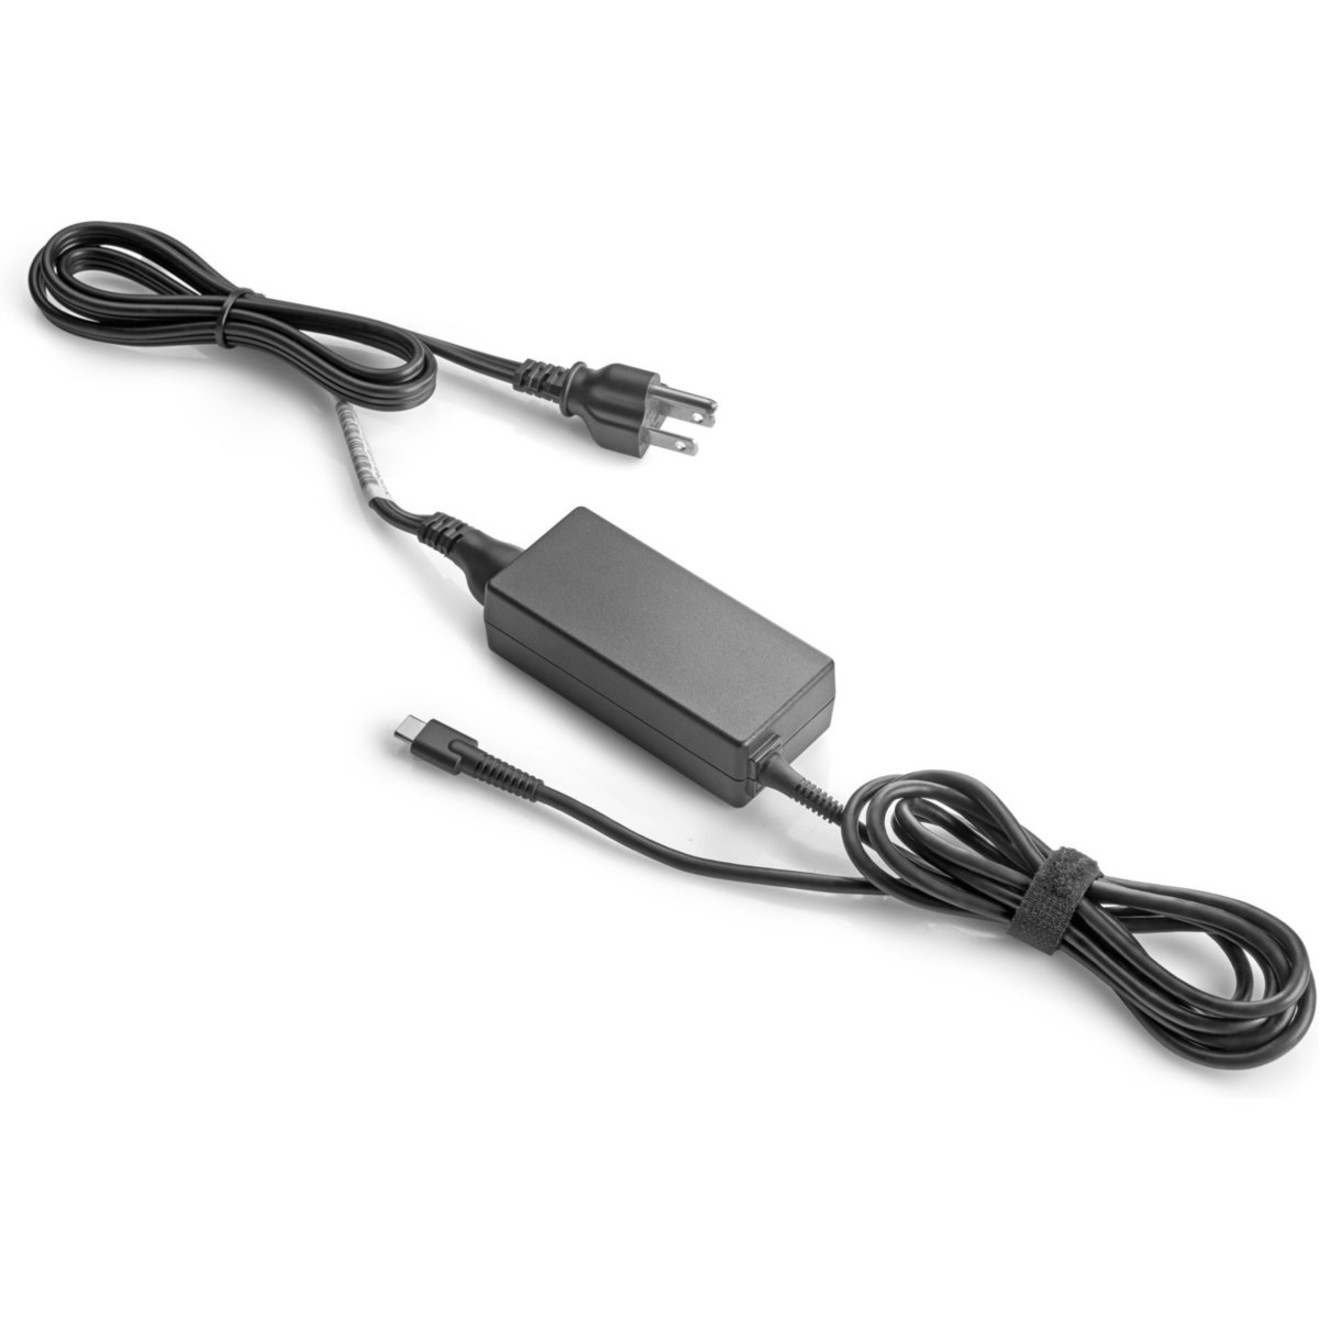 Axiom 65-Watt USB-C Power Adapt for Dell492-BCNW 65-Watt USB-C Power Adapter for Dell492-BCNW 492-BCNW-AX